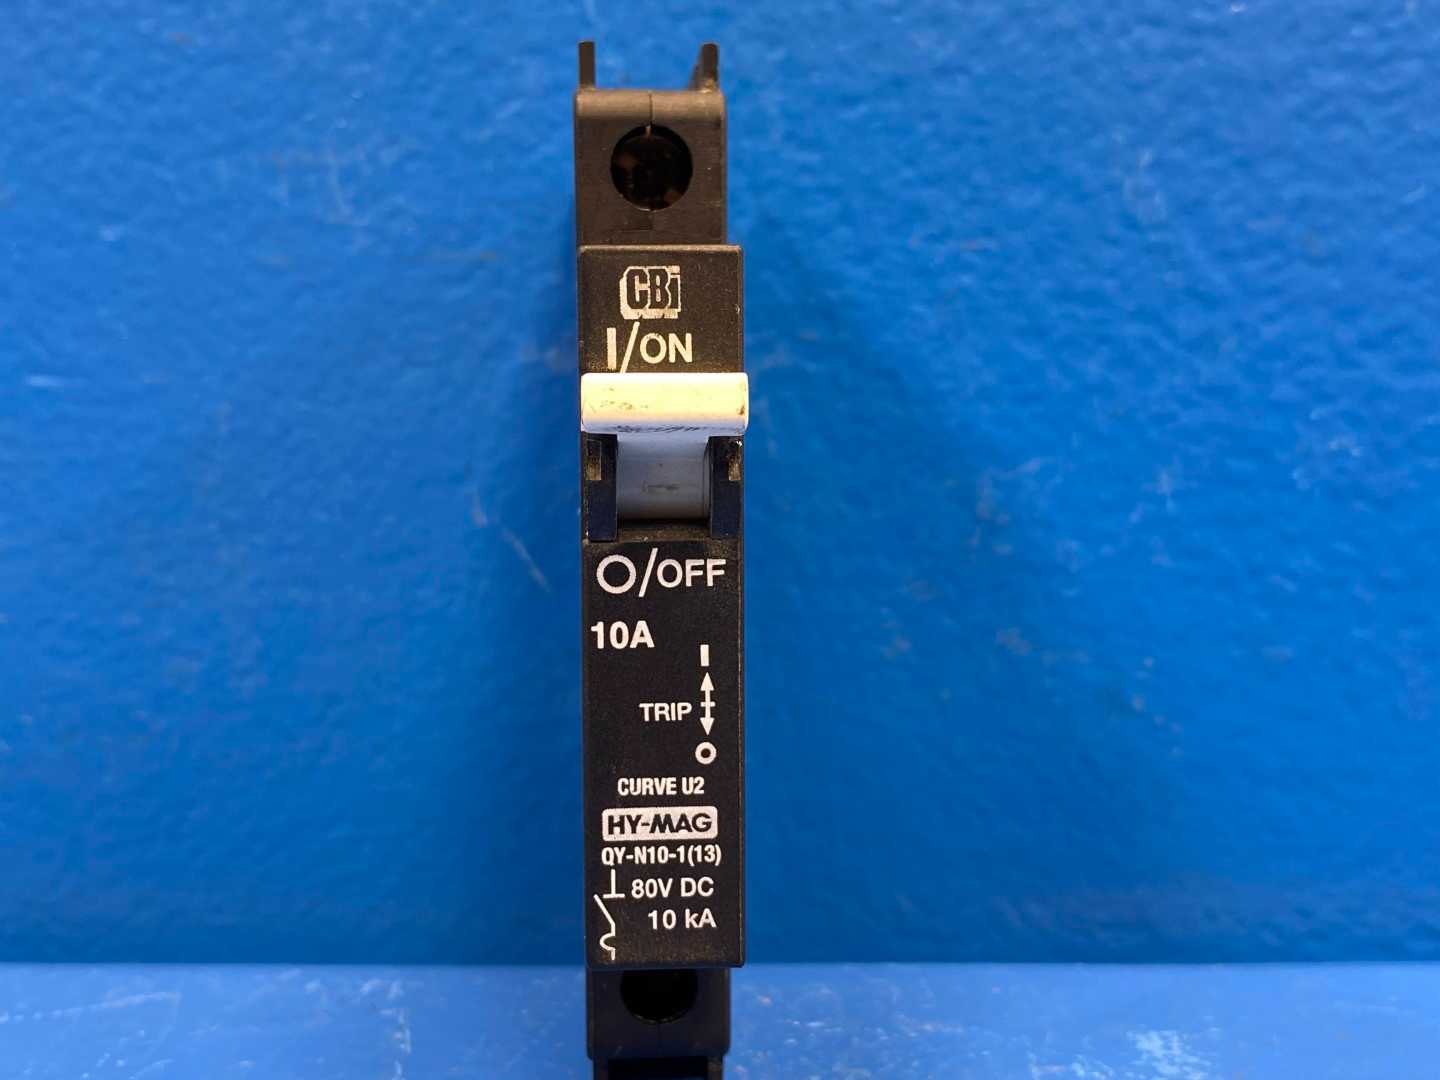 CBI QY-N10-1(13) 10A 1 Pole Circuit Breaker